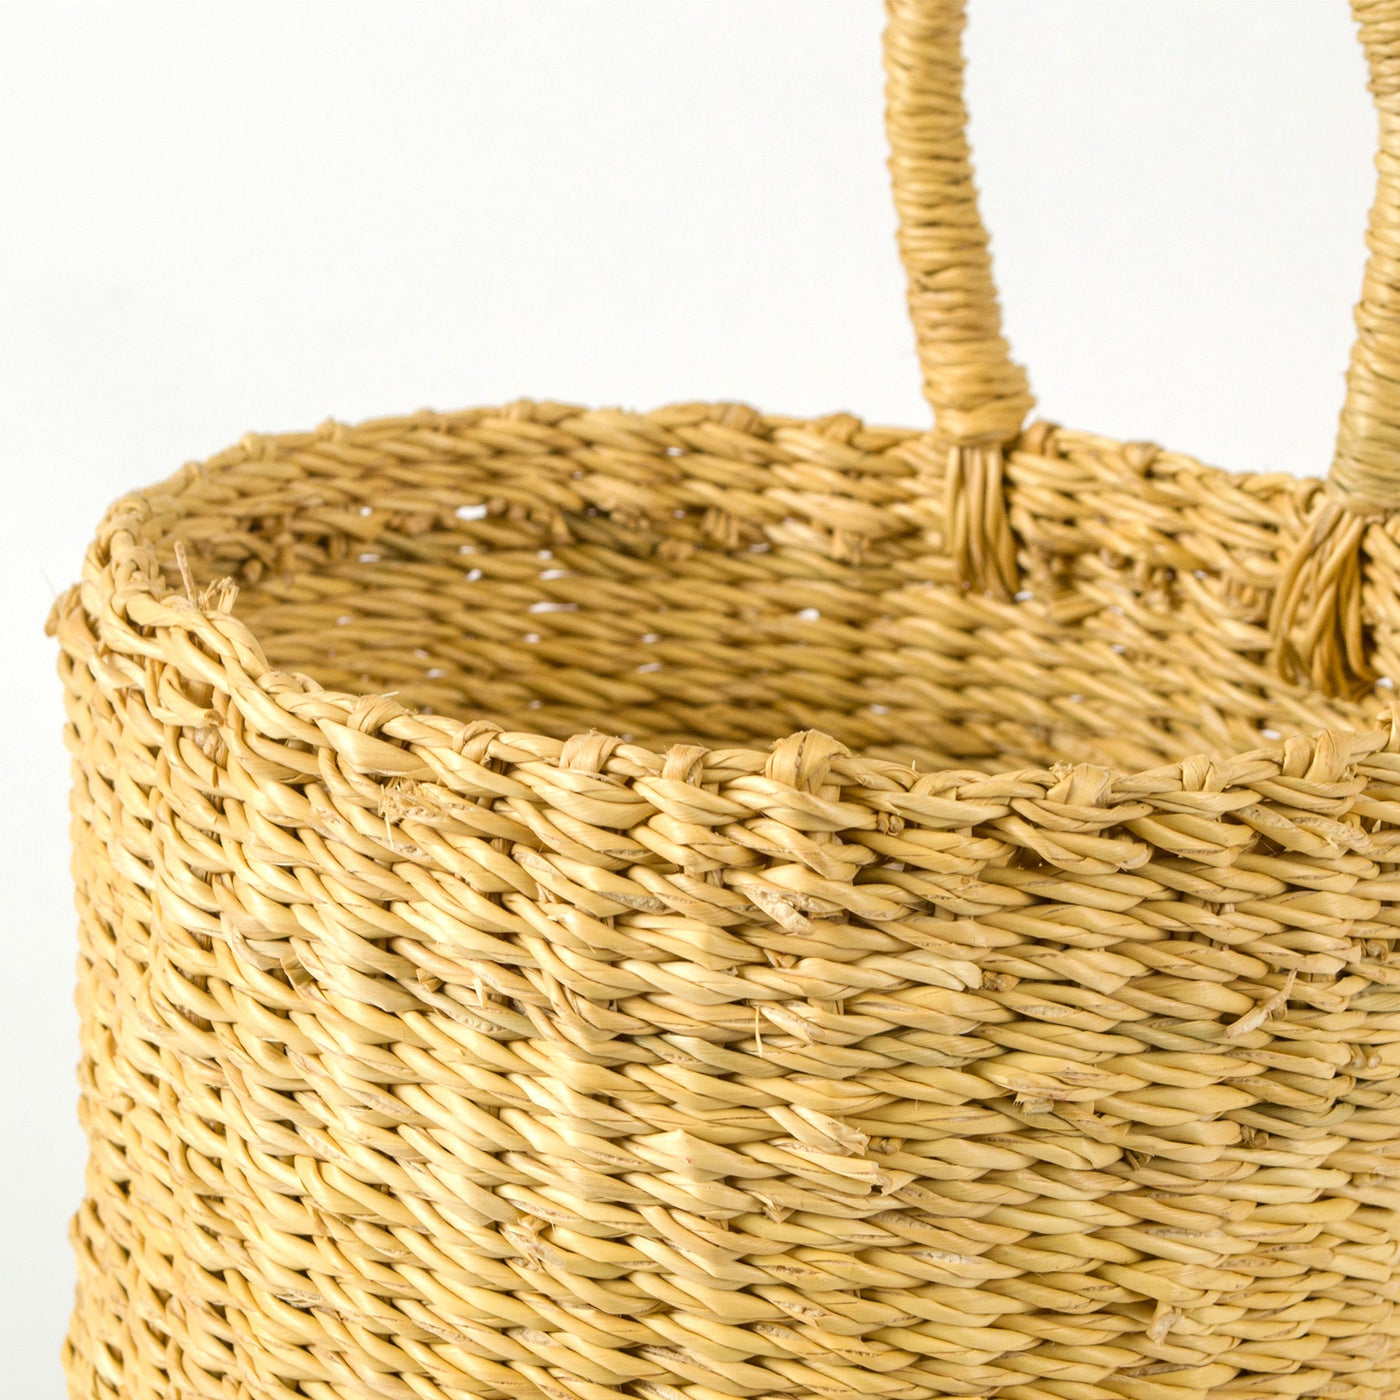 All Natural Hanging Basket